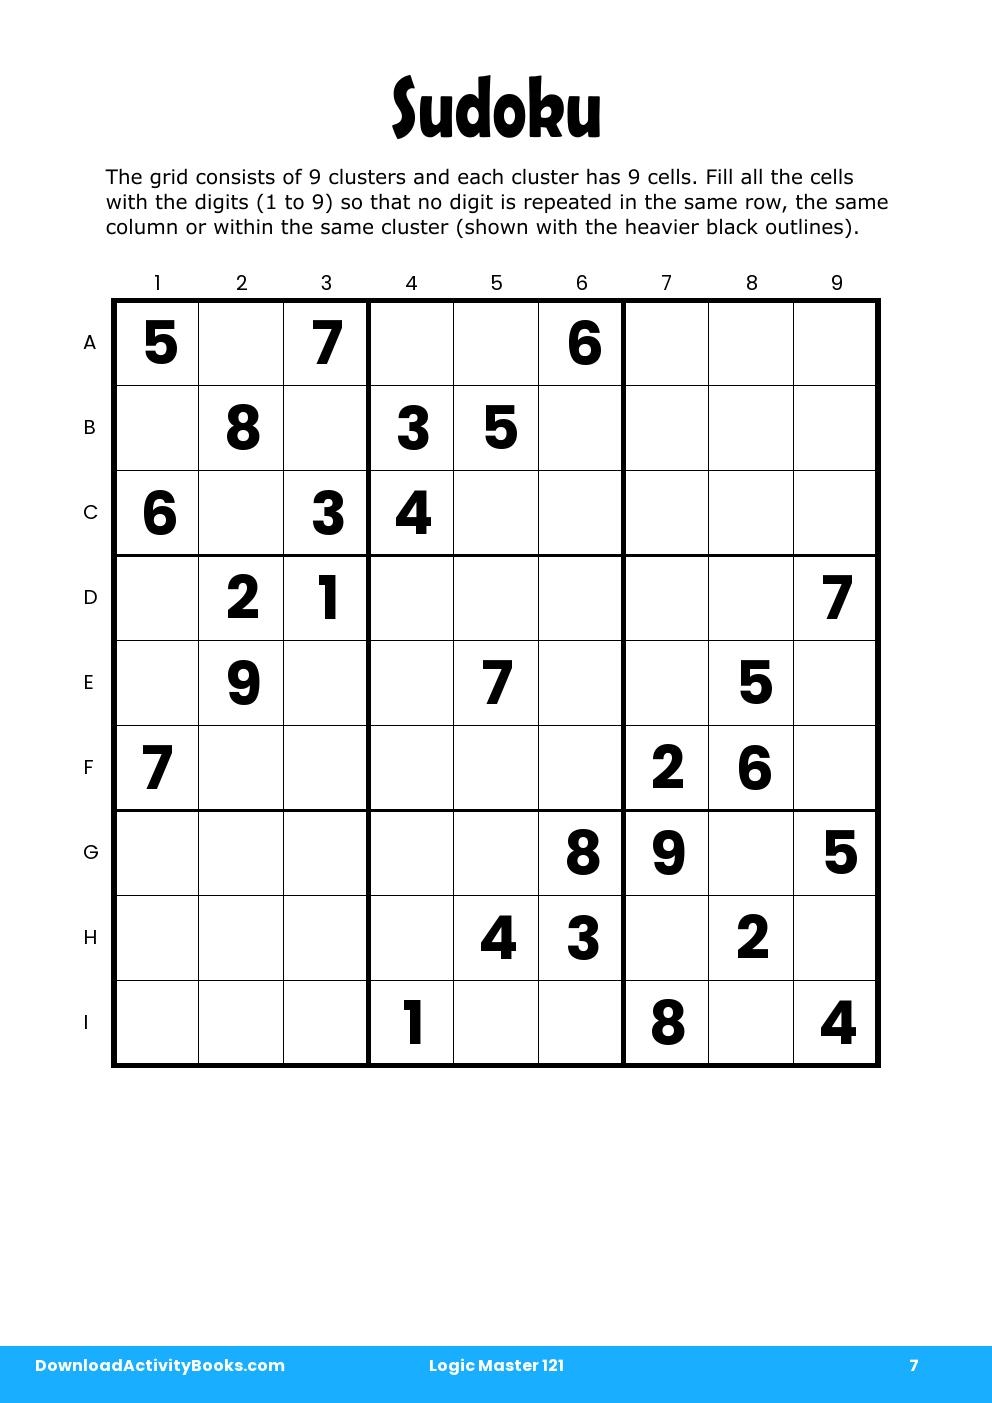 Sudoku in Logic Master 121